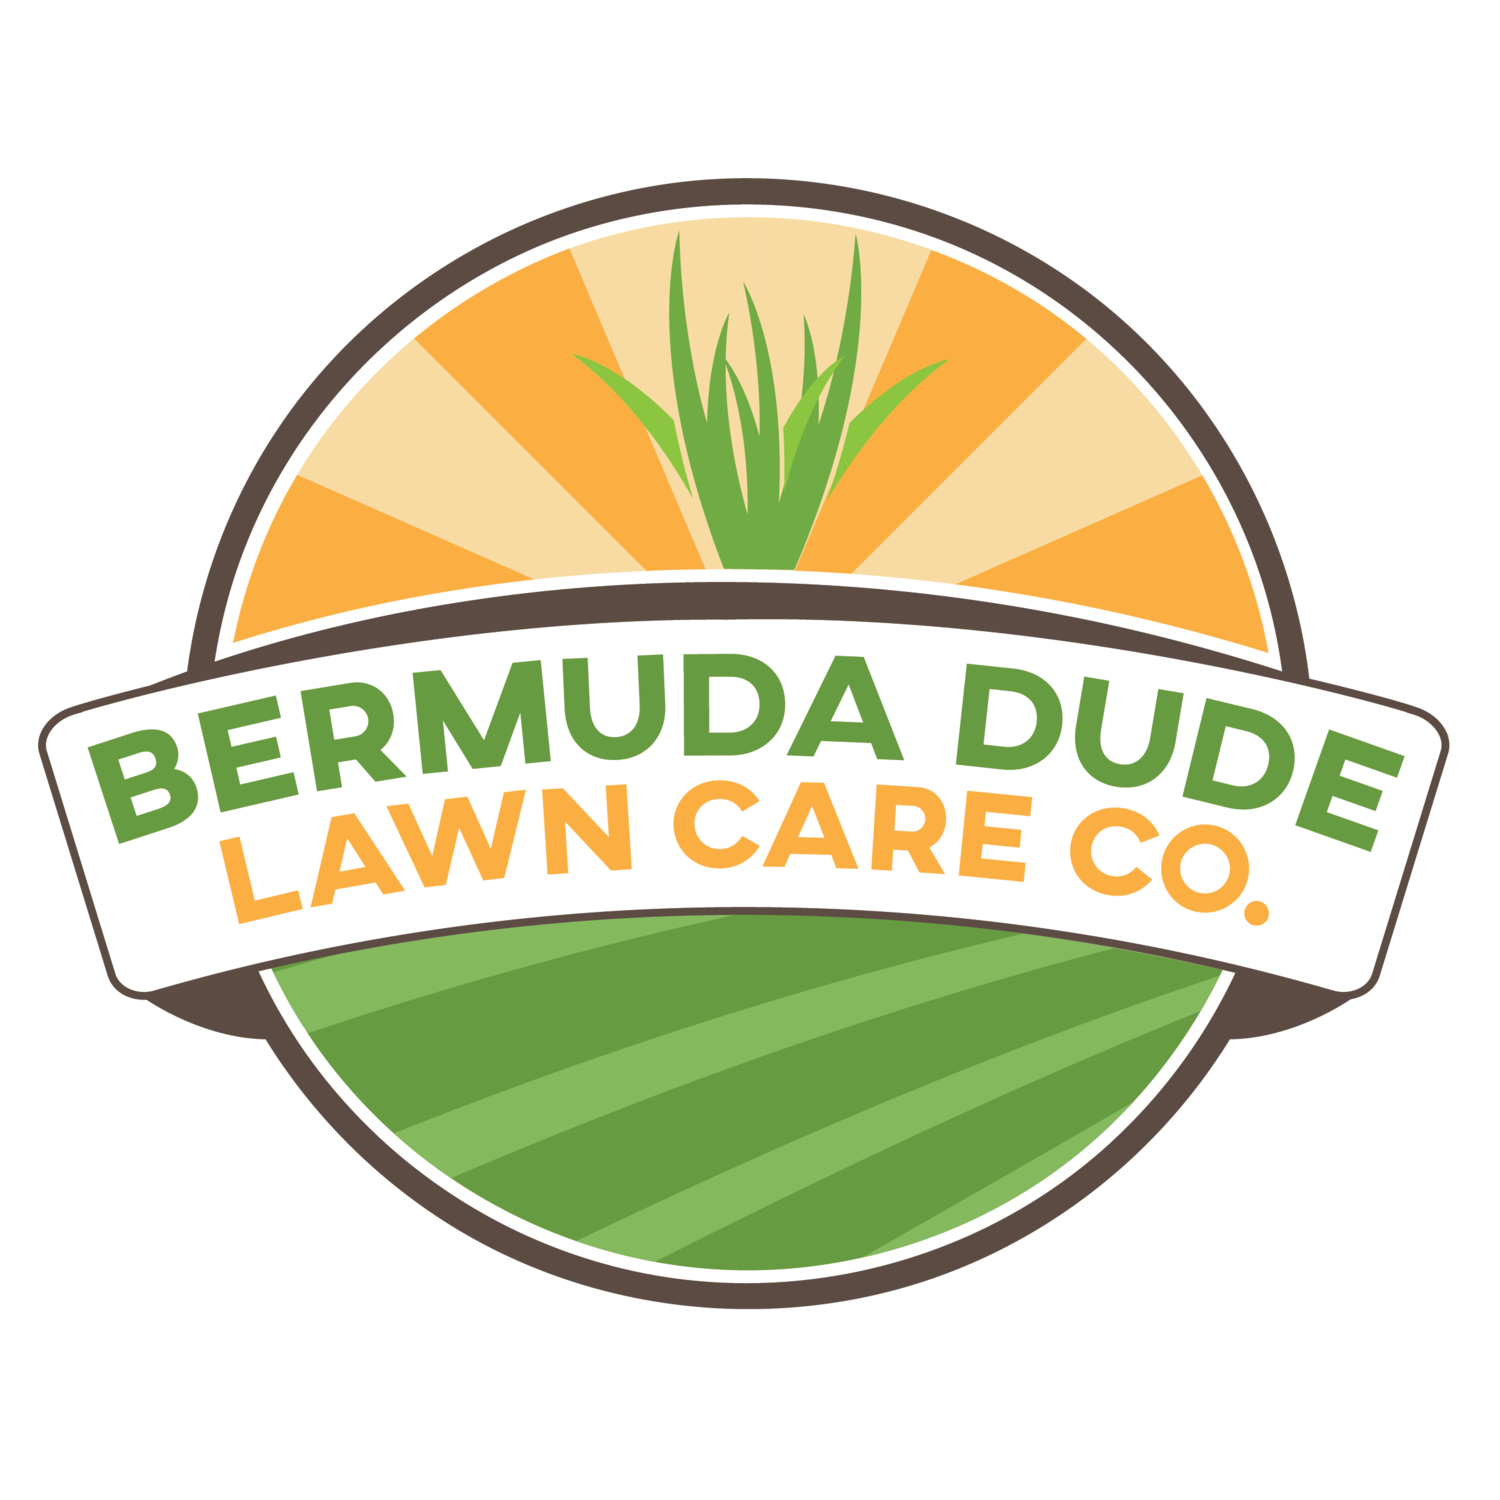 Bermuda Dude Lawn Care Co.